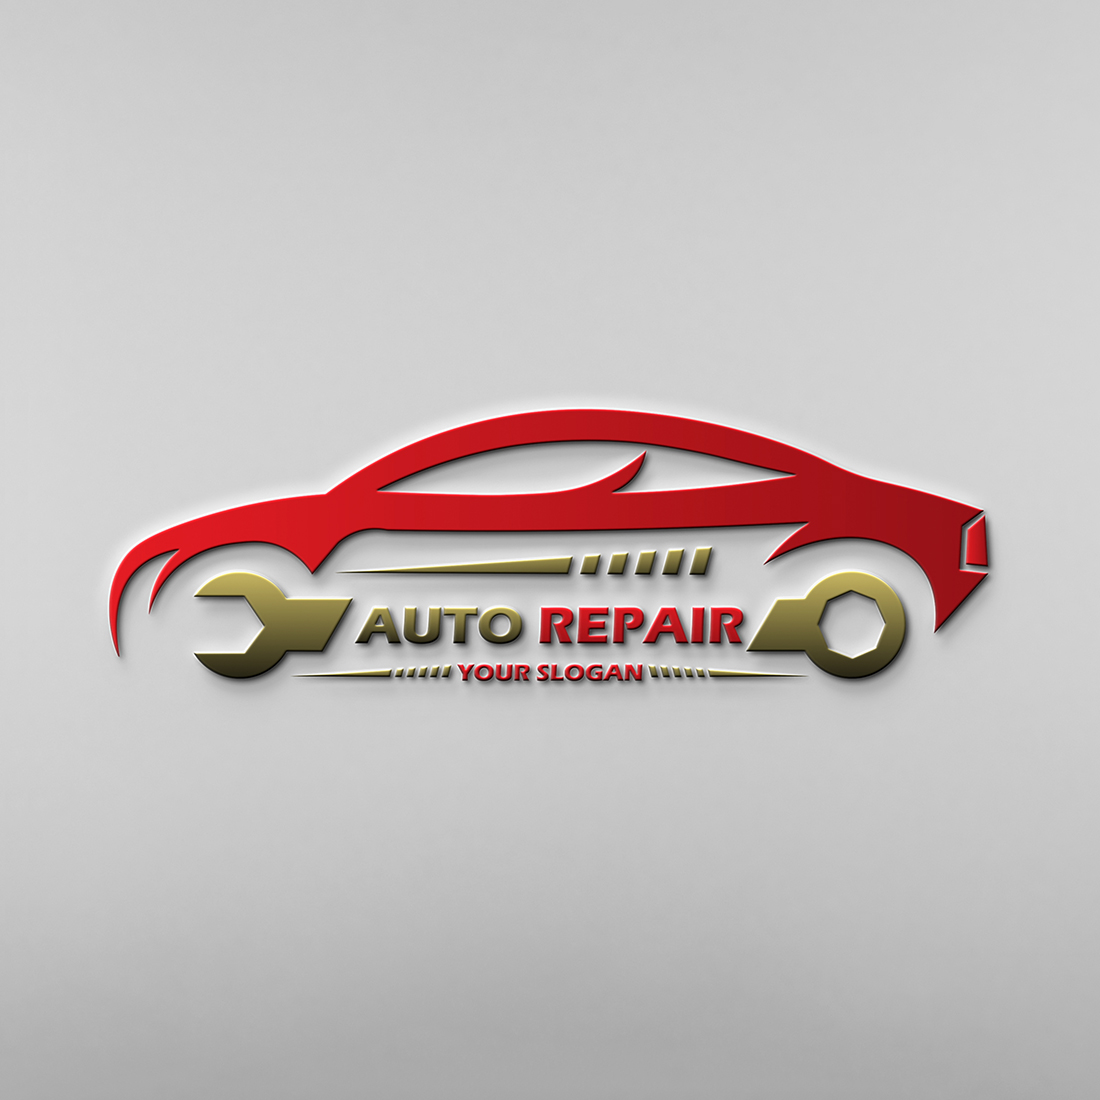 Car Repair Logo cover image.